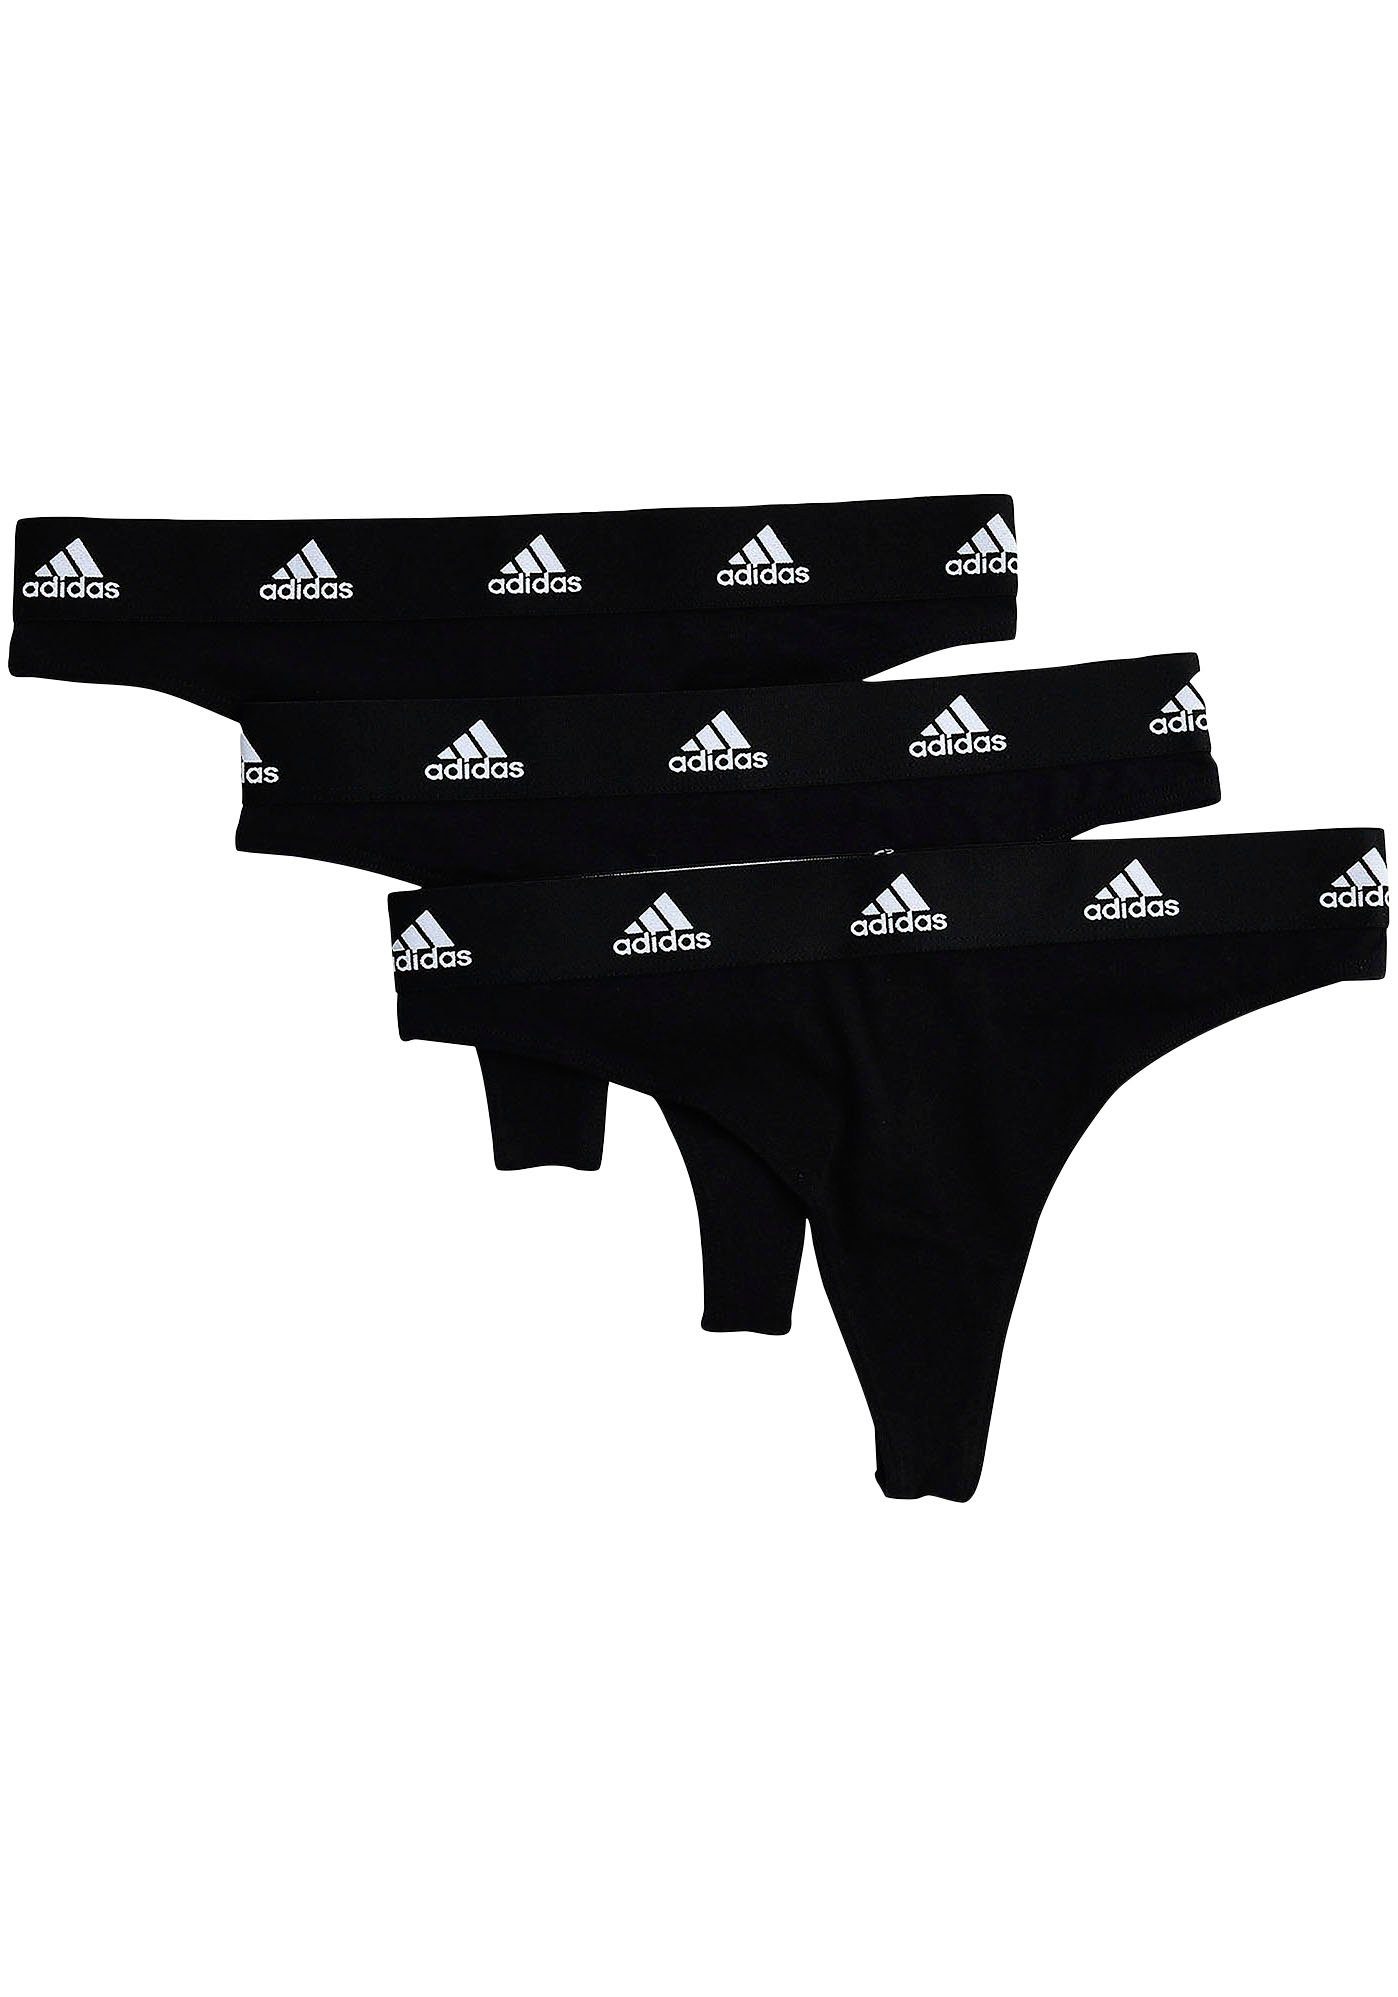 adidas Sportswear T-String (3er-Pack) Thong mit Adidas Markenlabel schwarz